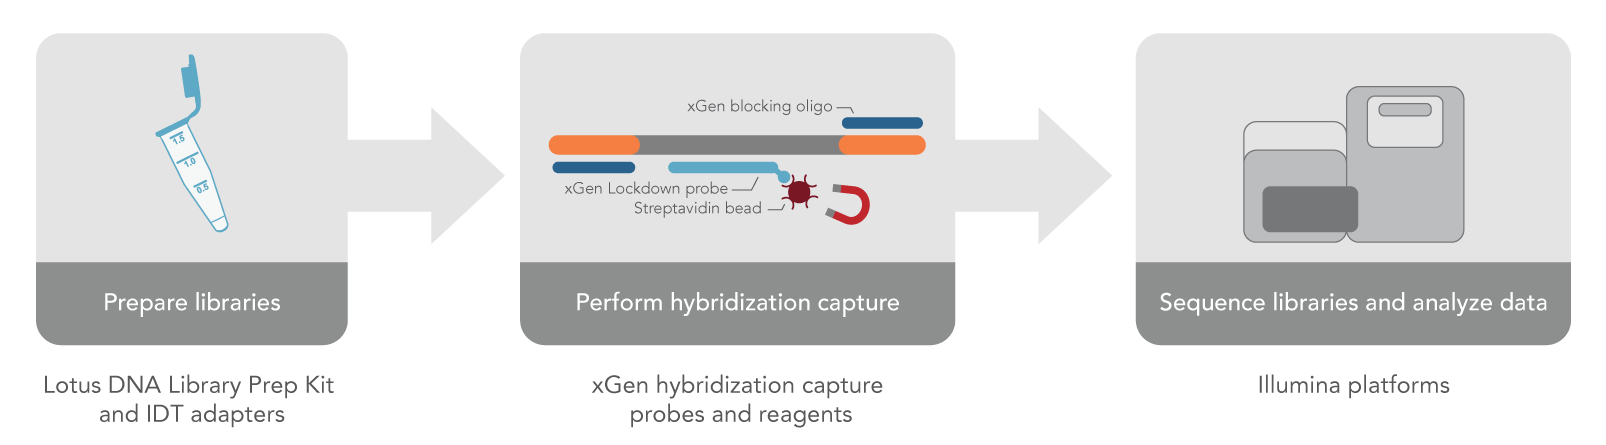 Lotus-xGen hybridization capture workflow